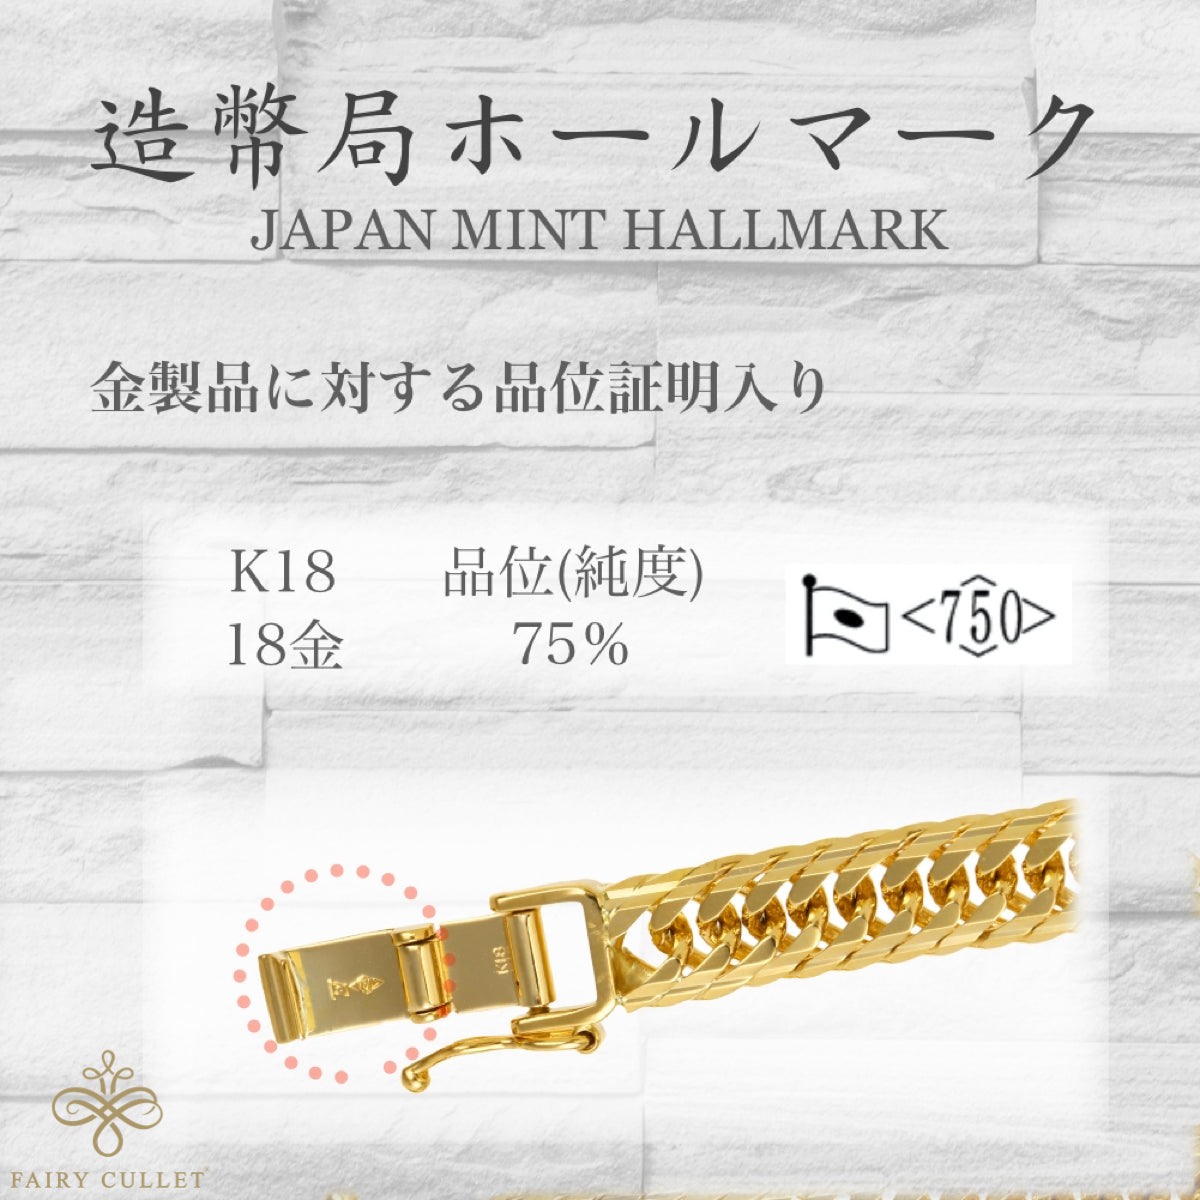 K18(18金) 喜平ブレスレット Mカットトリプル 10.5g 20cm 新品